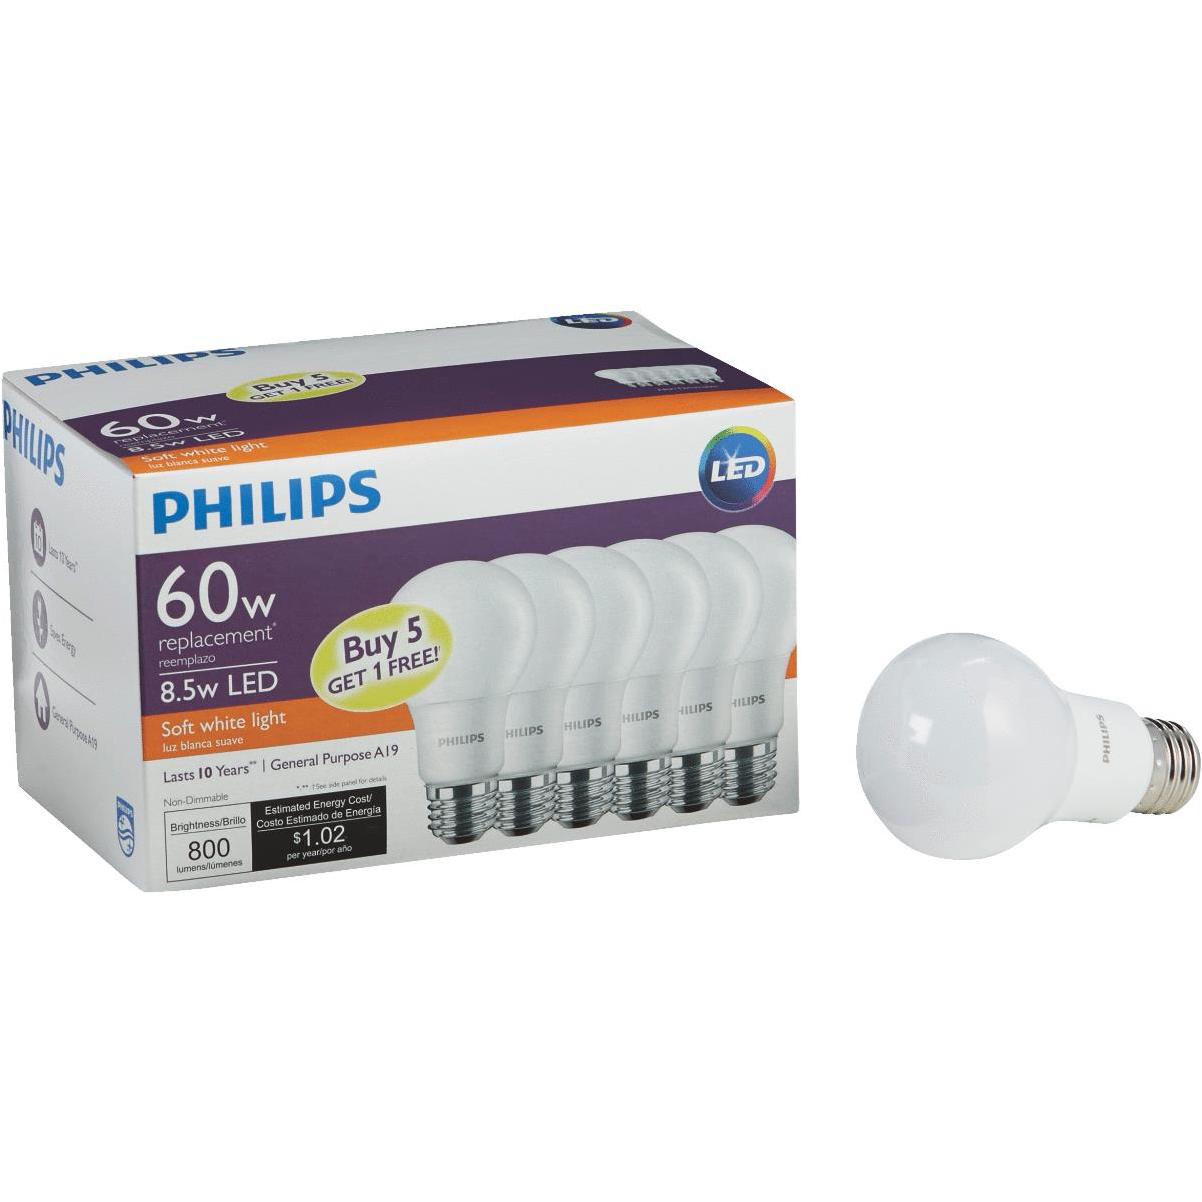 Филипс 60 отзывы. Philips Soft White 60w.